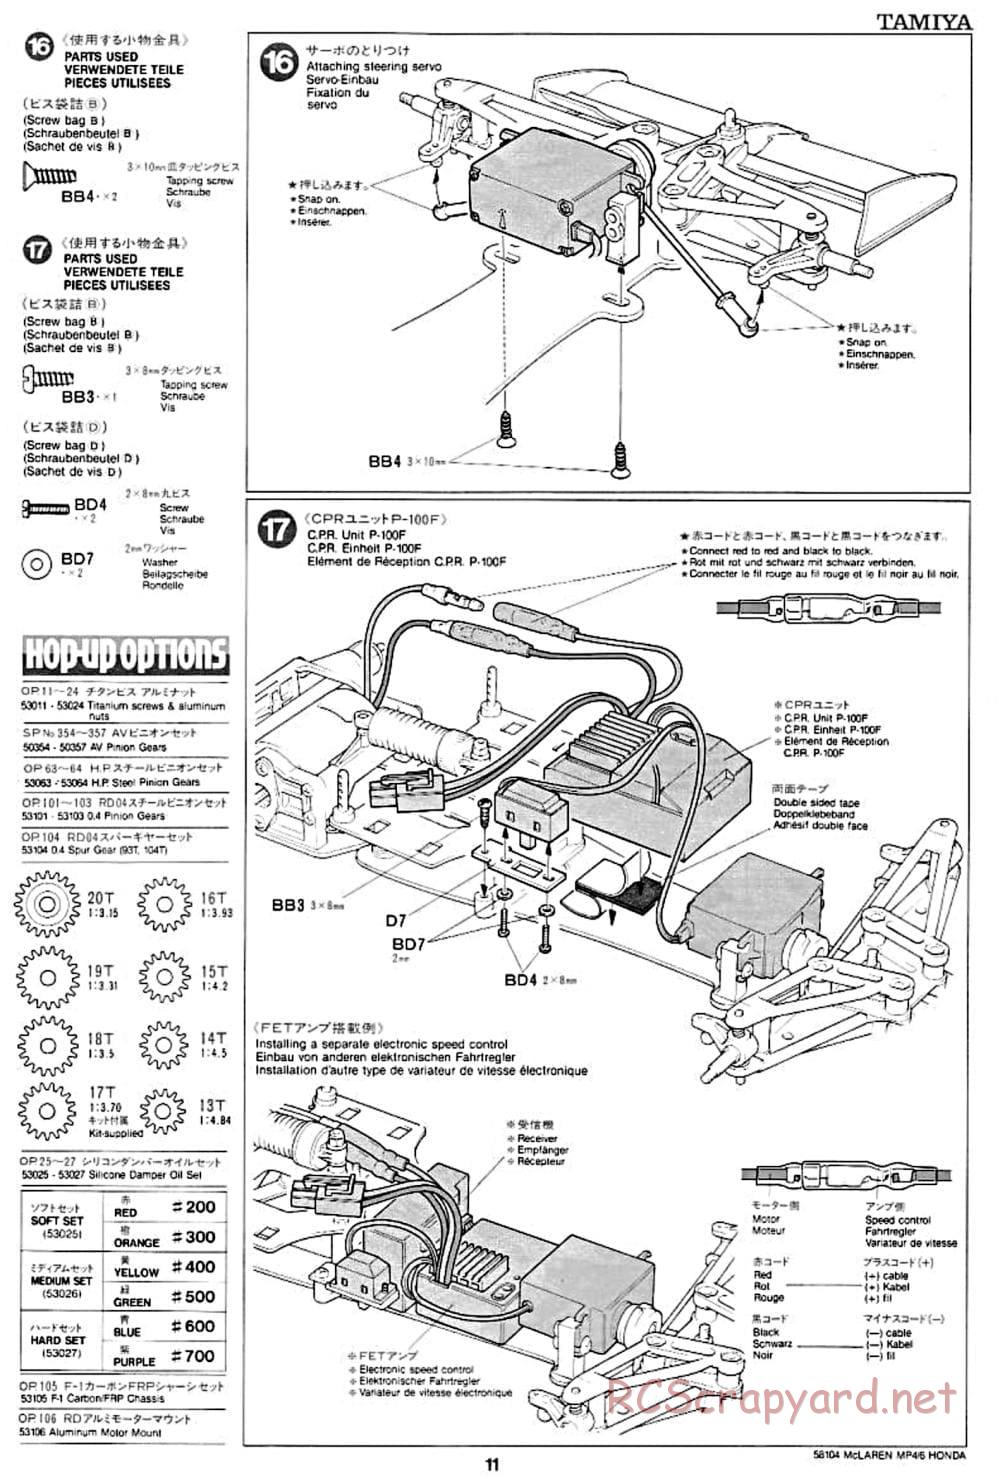 Tamiya - McLaren MP4/6 Honda - F102 Chassis - Manual - Page 11